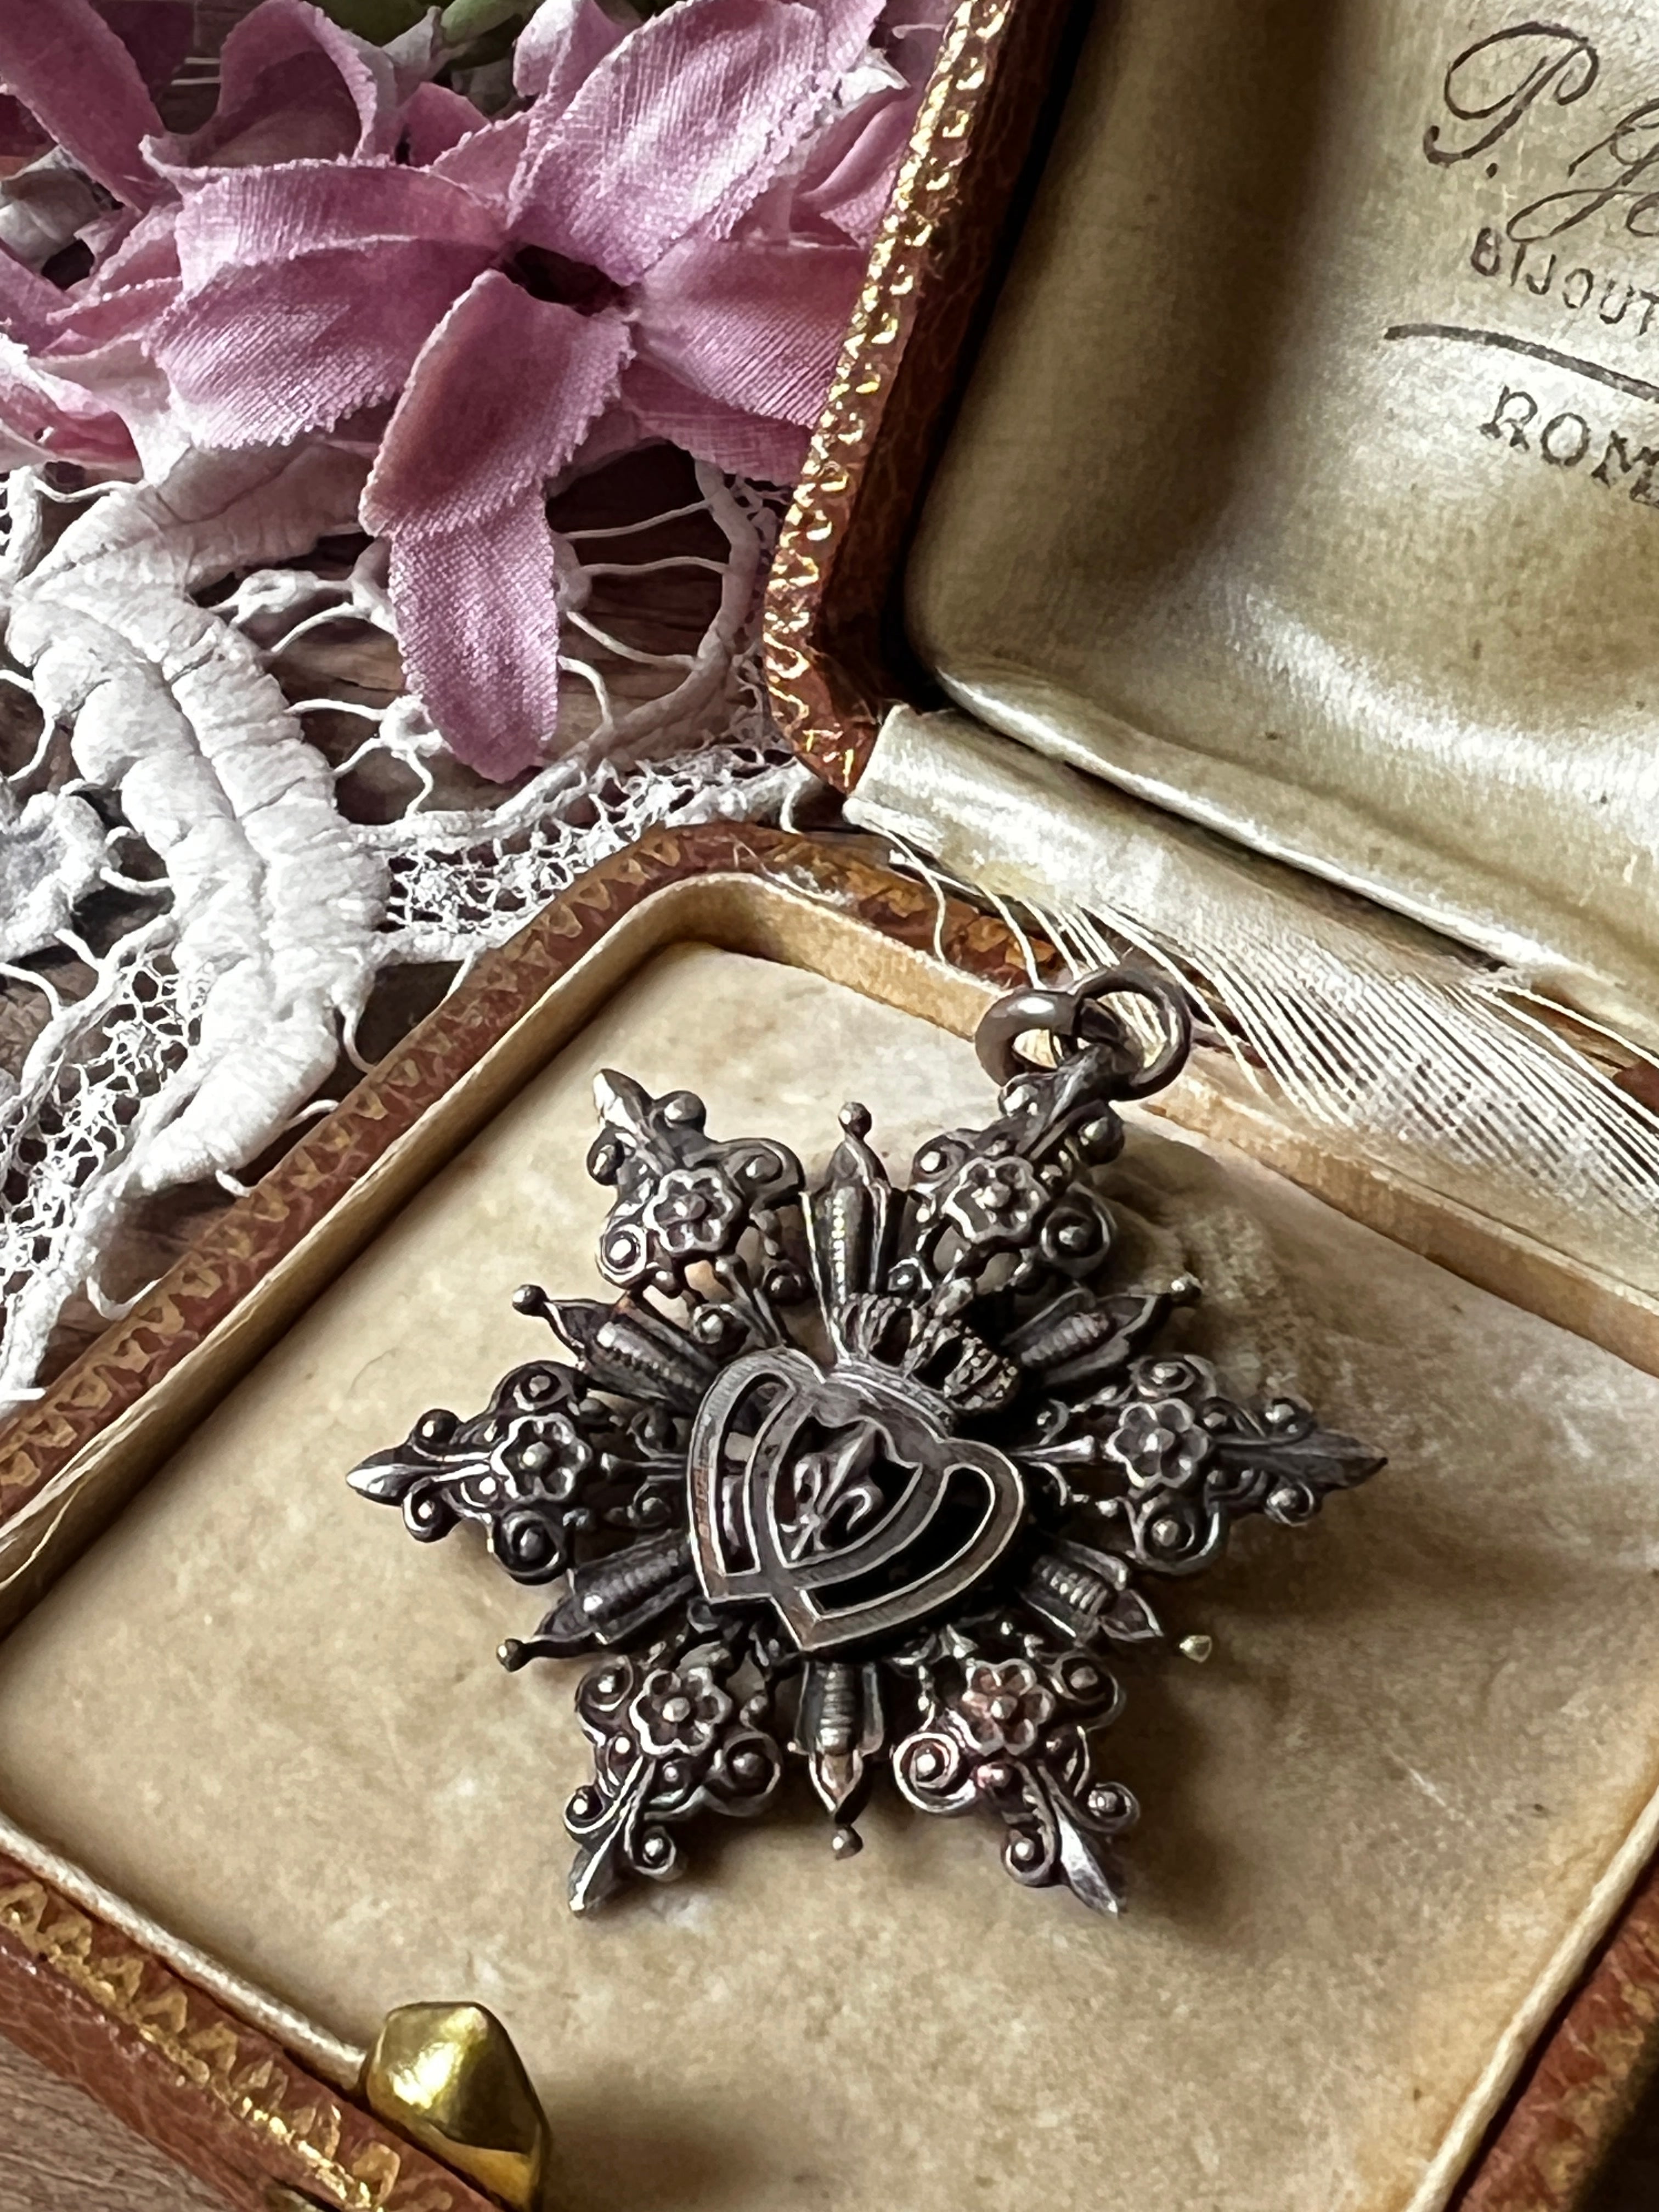 アンティークチャーム(王冠と紋章) – France Antique 銀色アンティーク